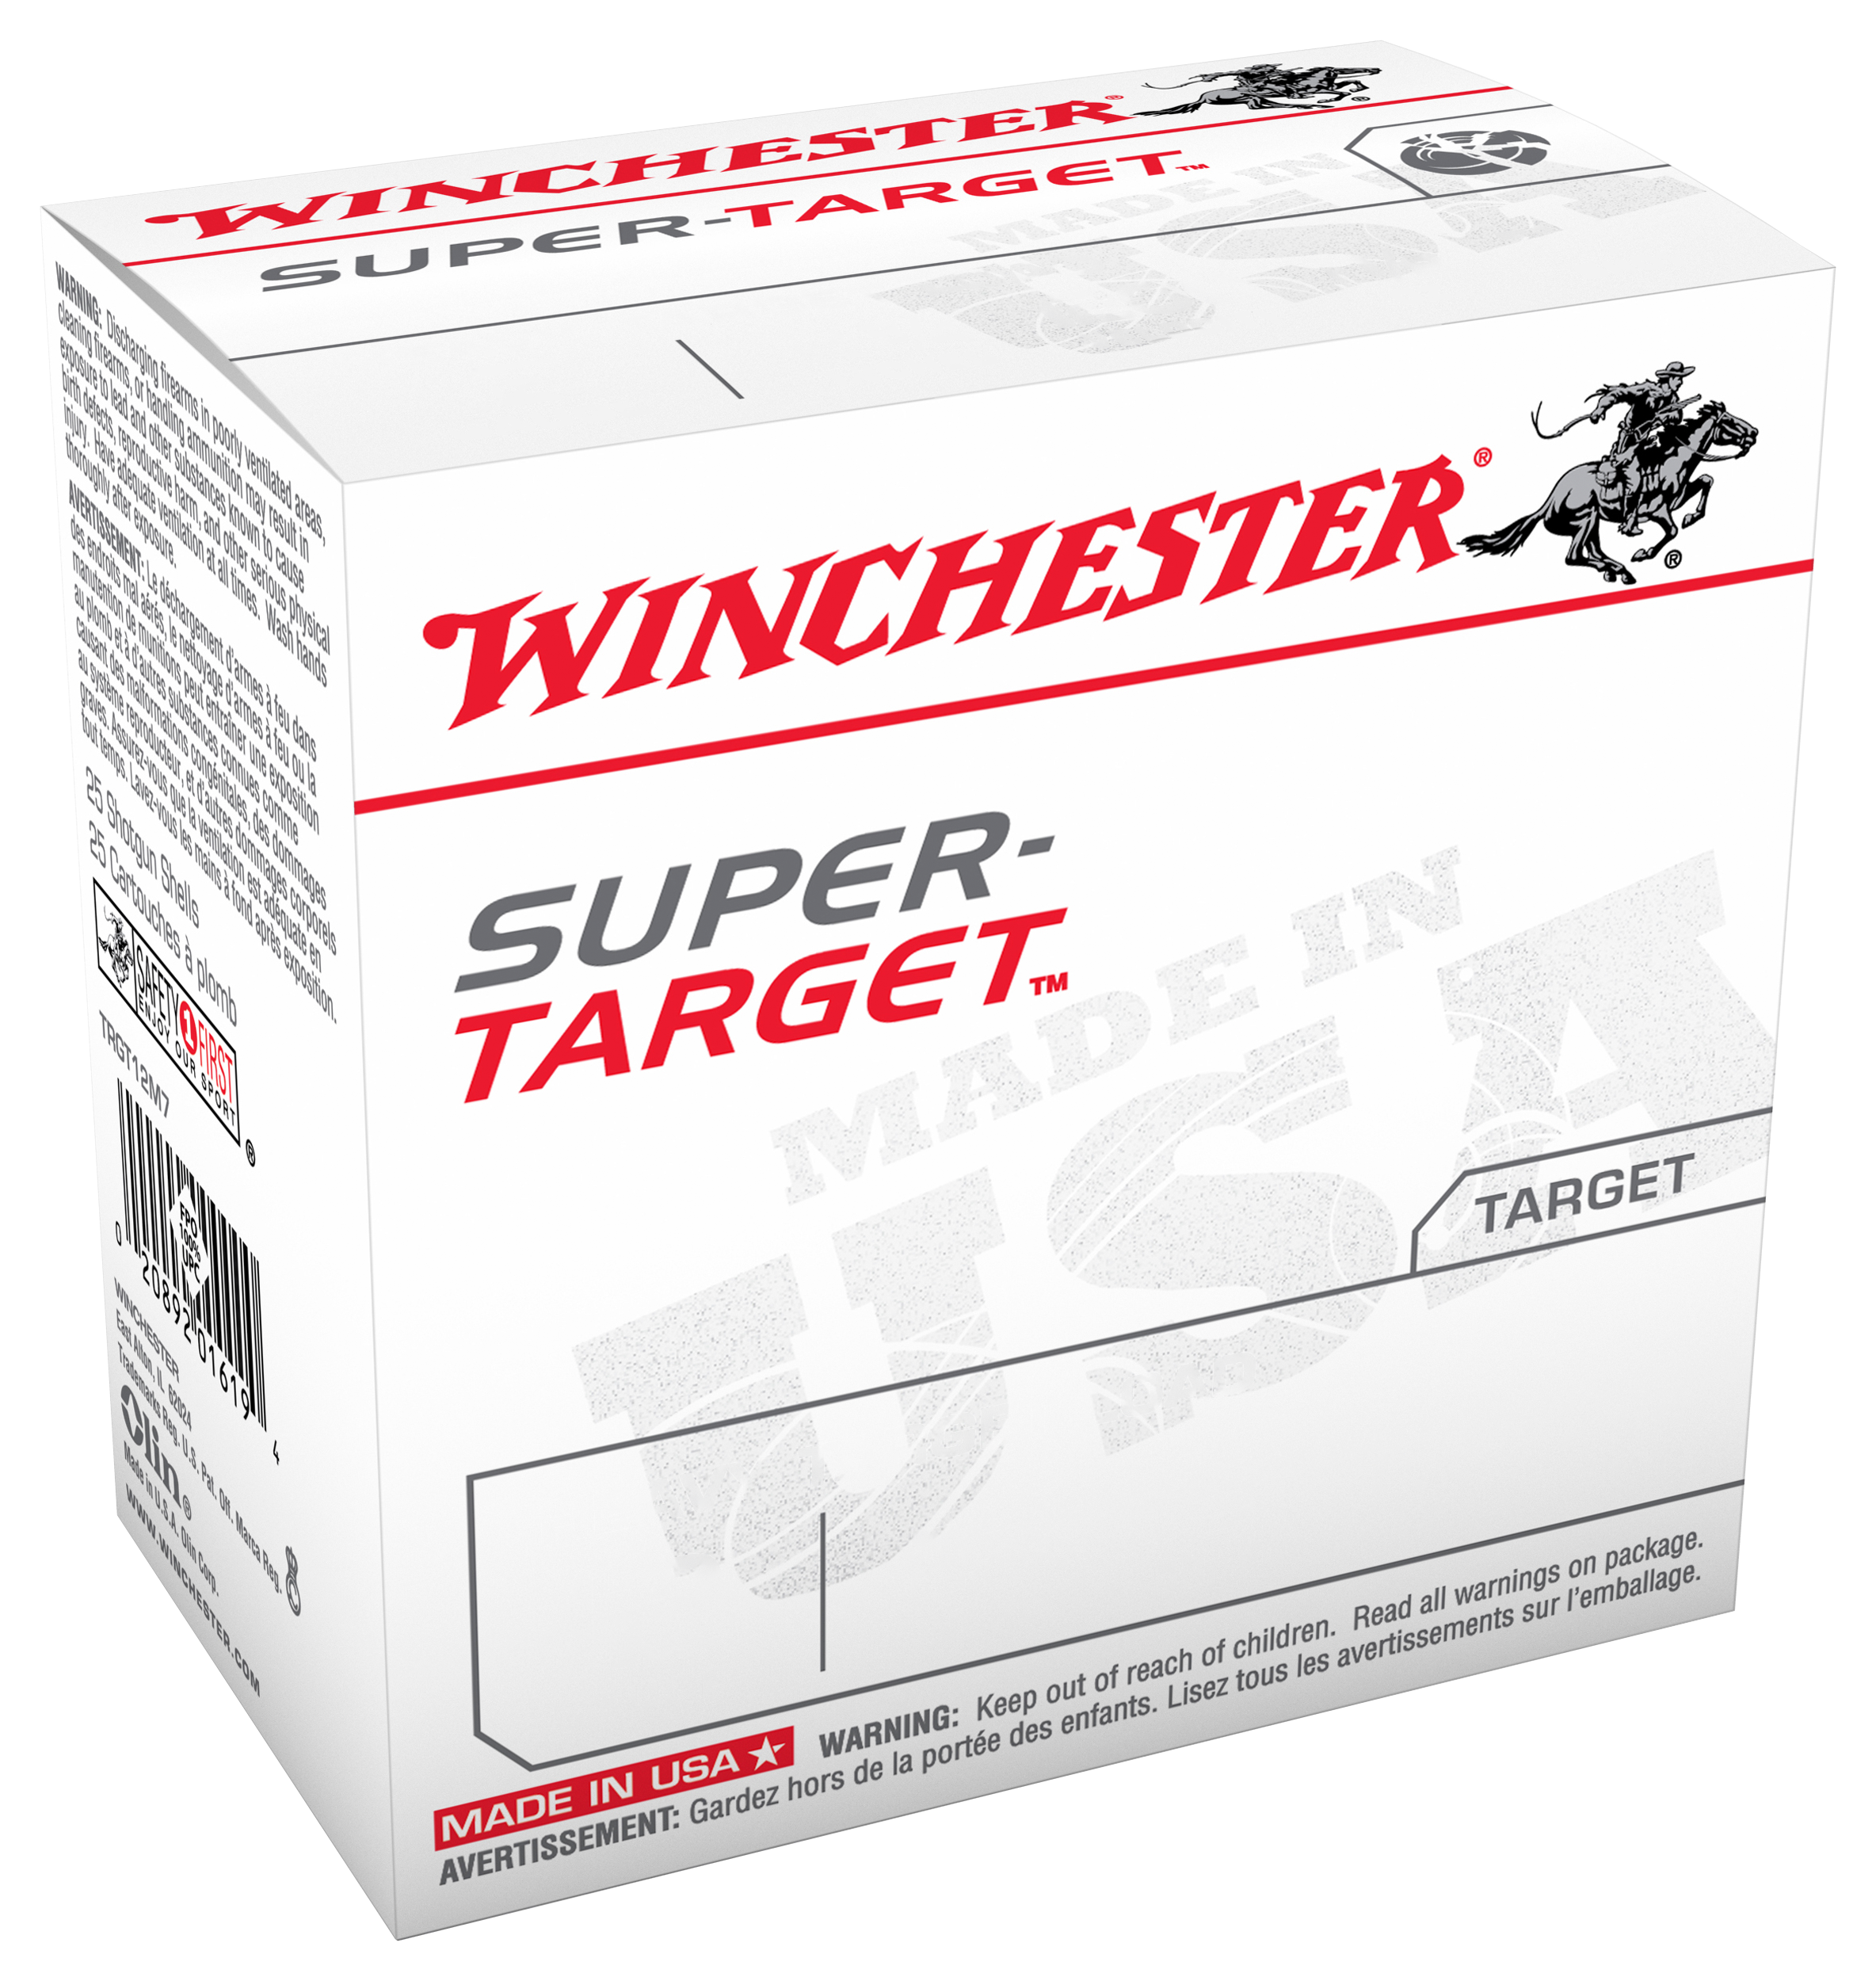 Winchester Super-Target Target Load Shotshells - 20 gauge - 8 Shot - 250 Rounds